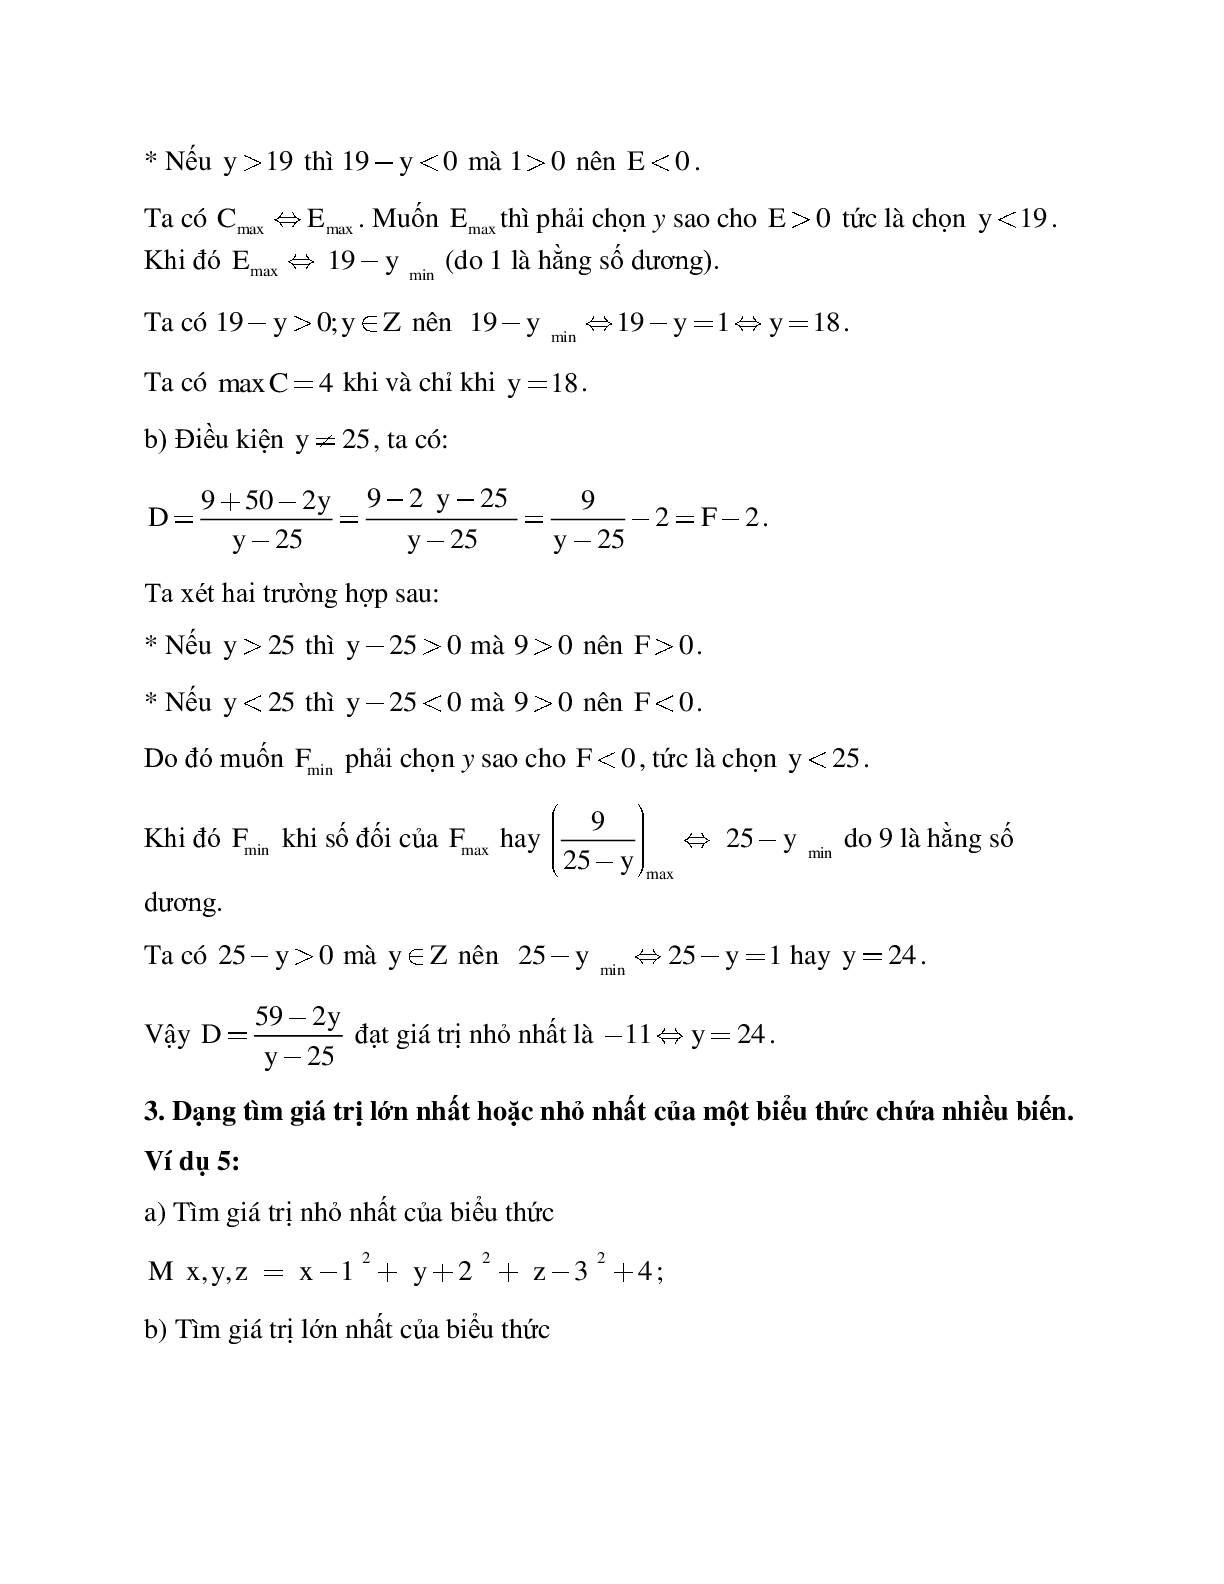 Hệ thống bài tập về Giá trị lớn nhất - Giá trị nhỏ nhất của một biểu thức đại số có lời giải (trang 6)